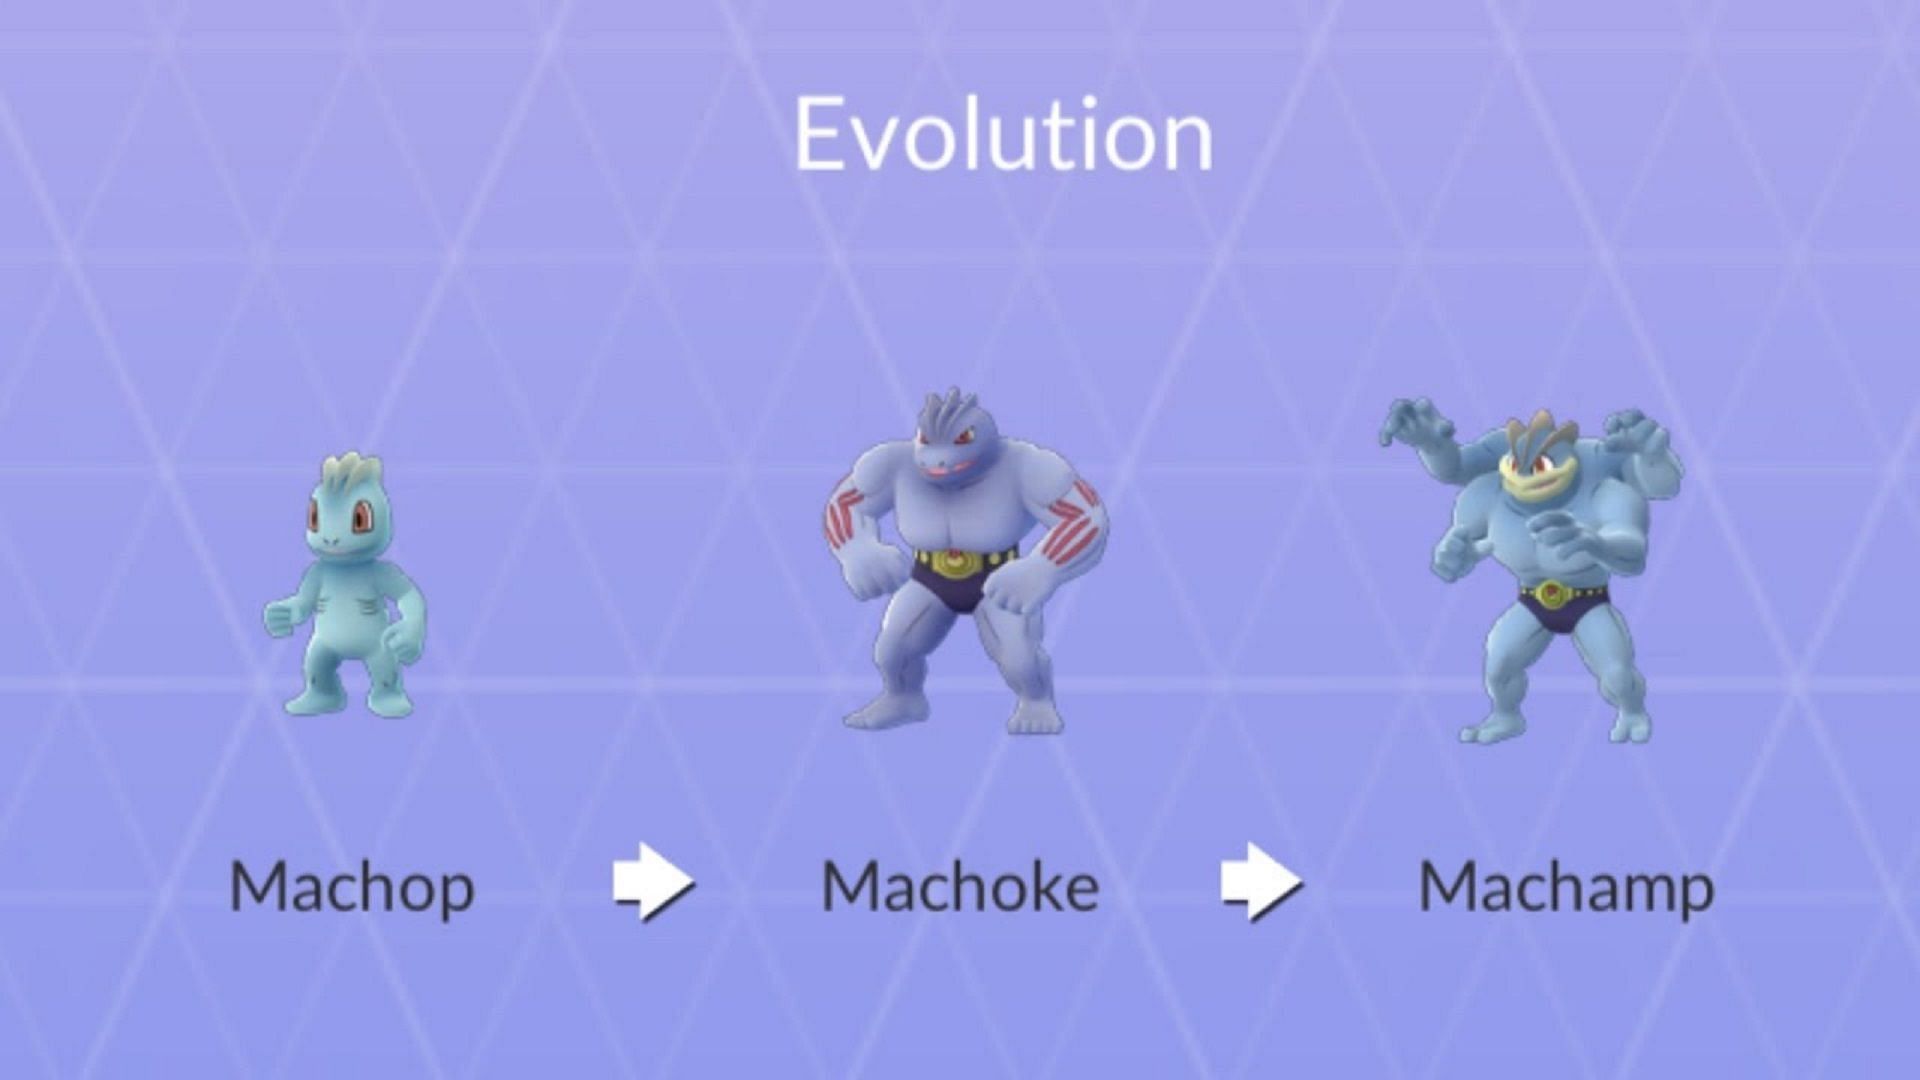 machop evolution chart